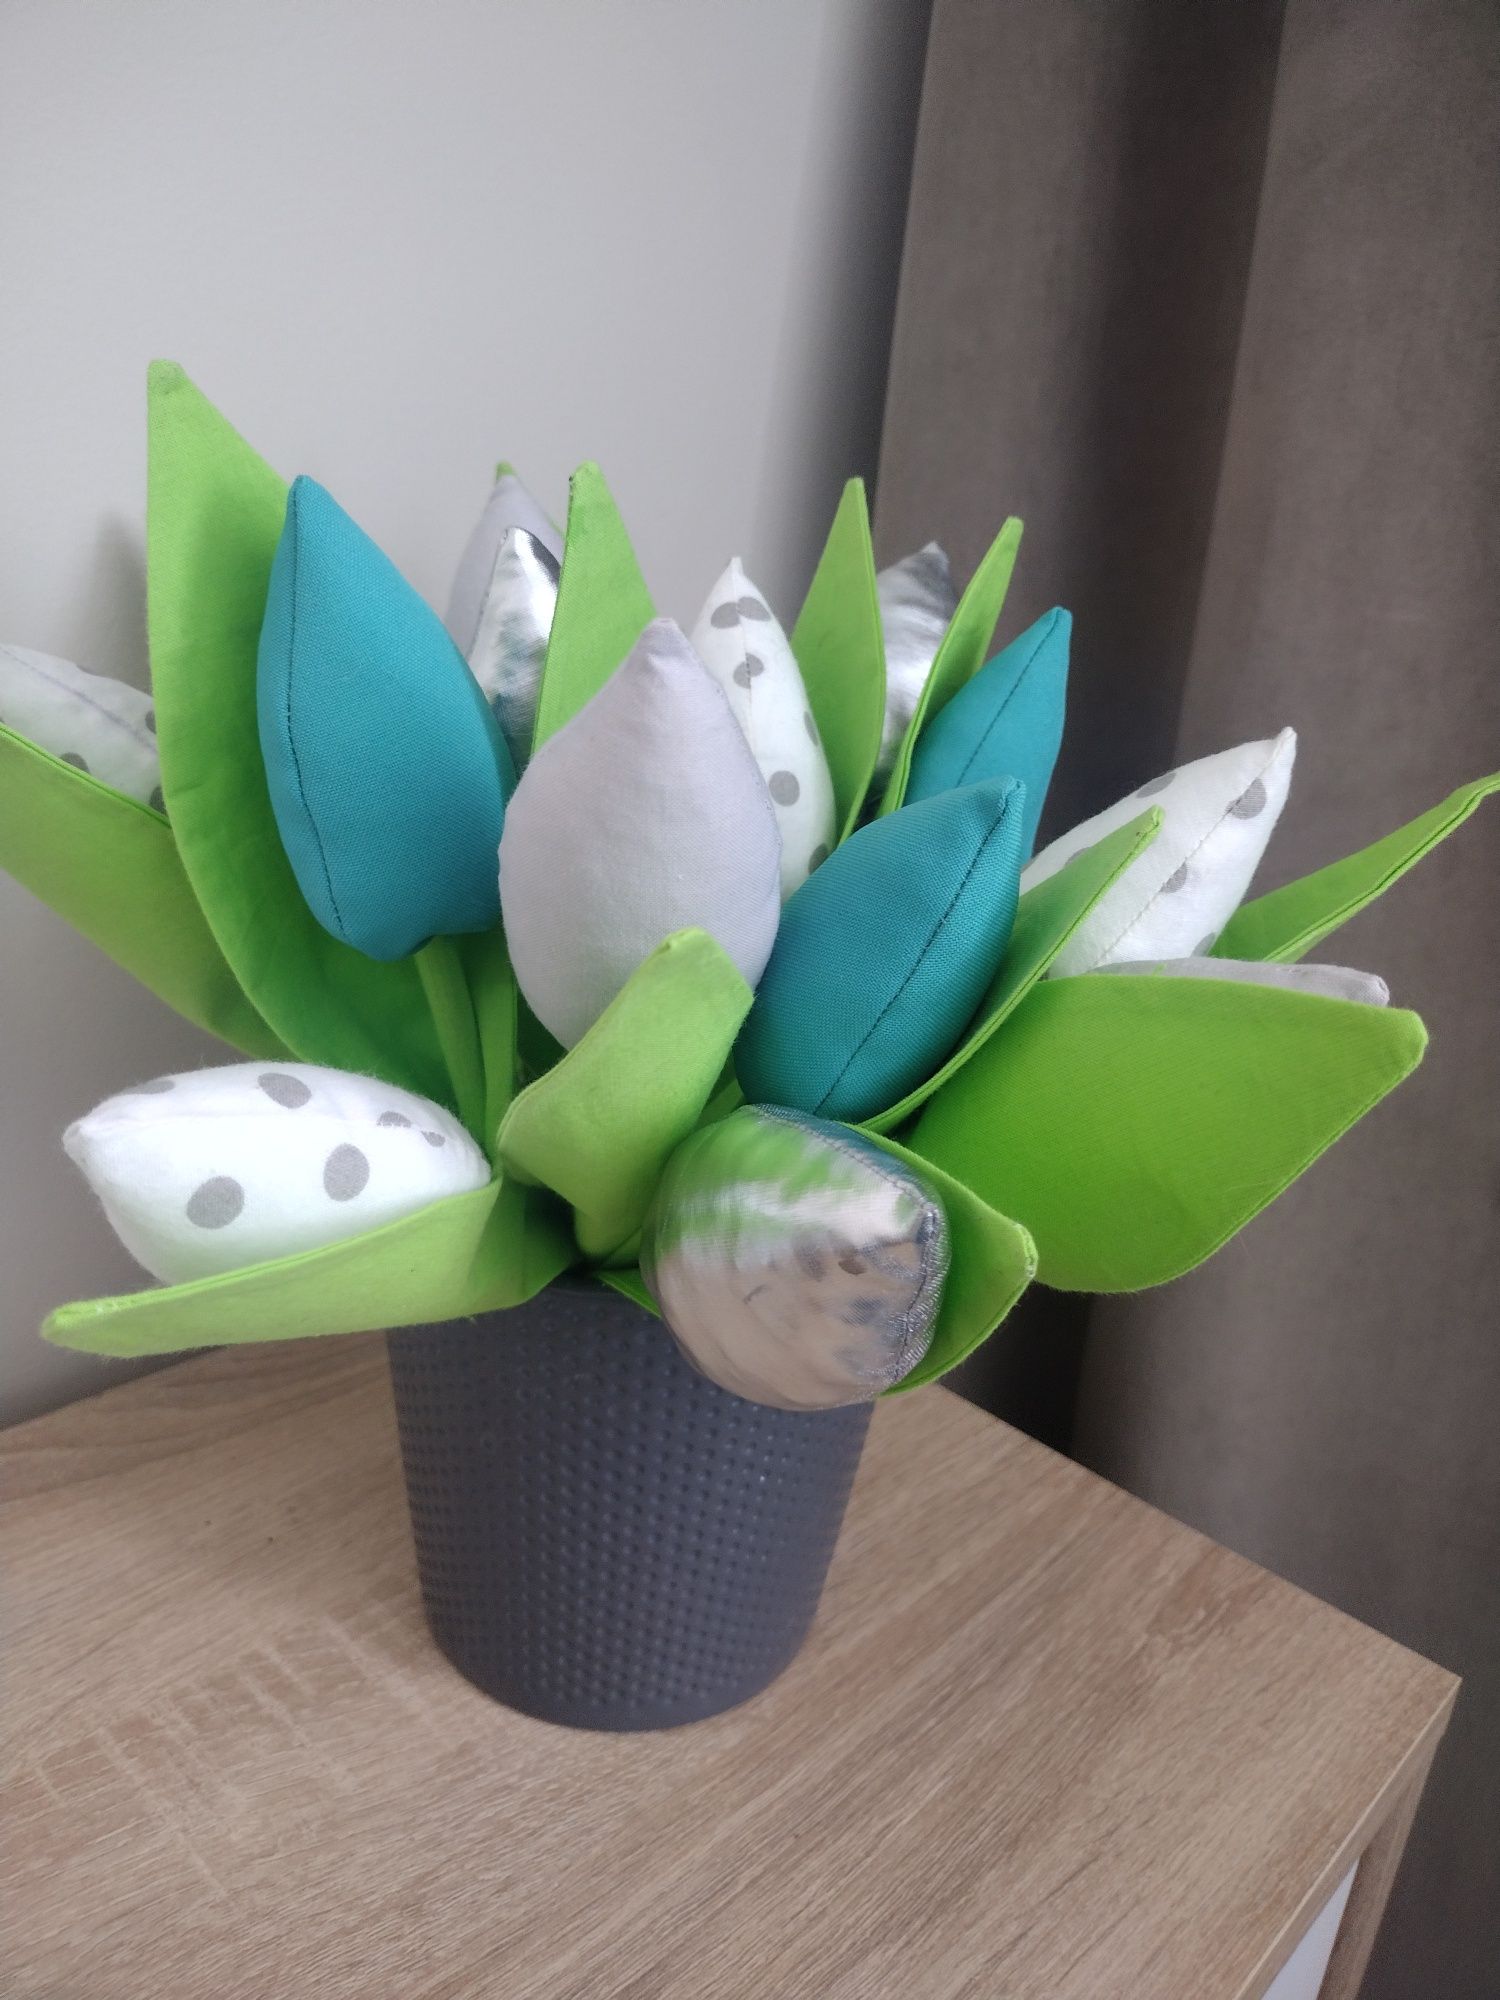 Zasłony 3 sztuki plus bukiet 16 tulipanów z materiału